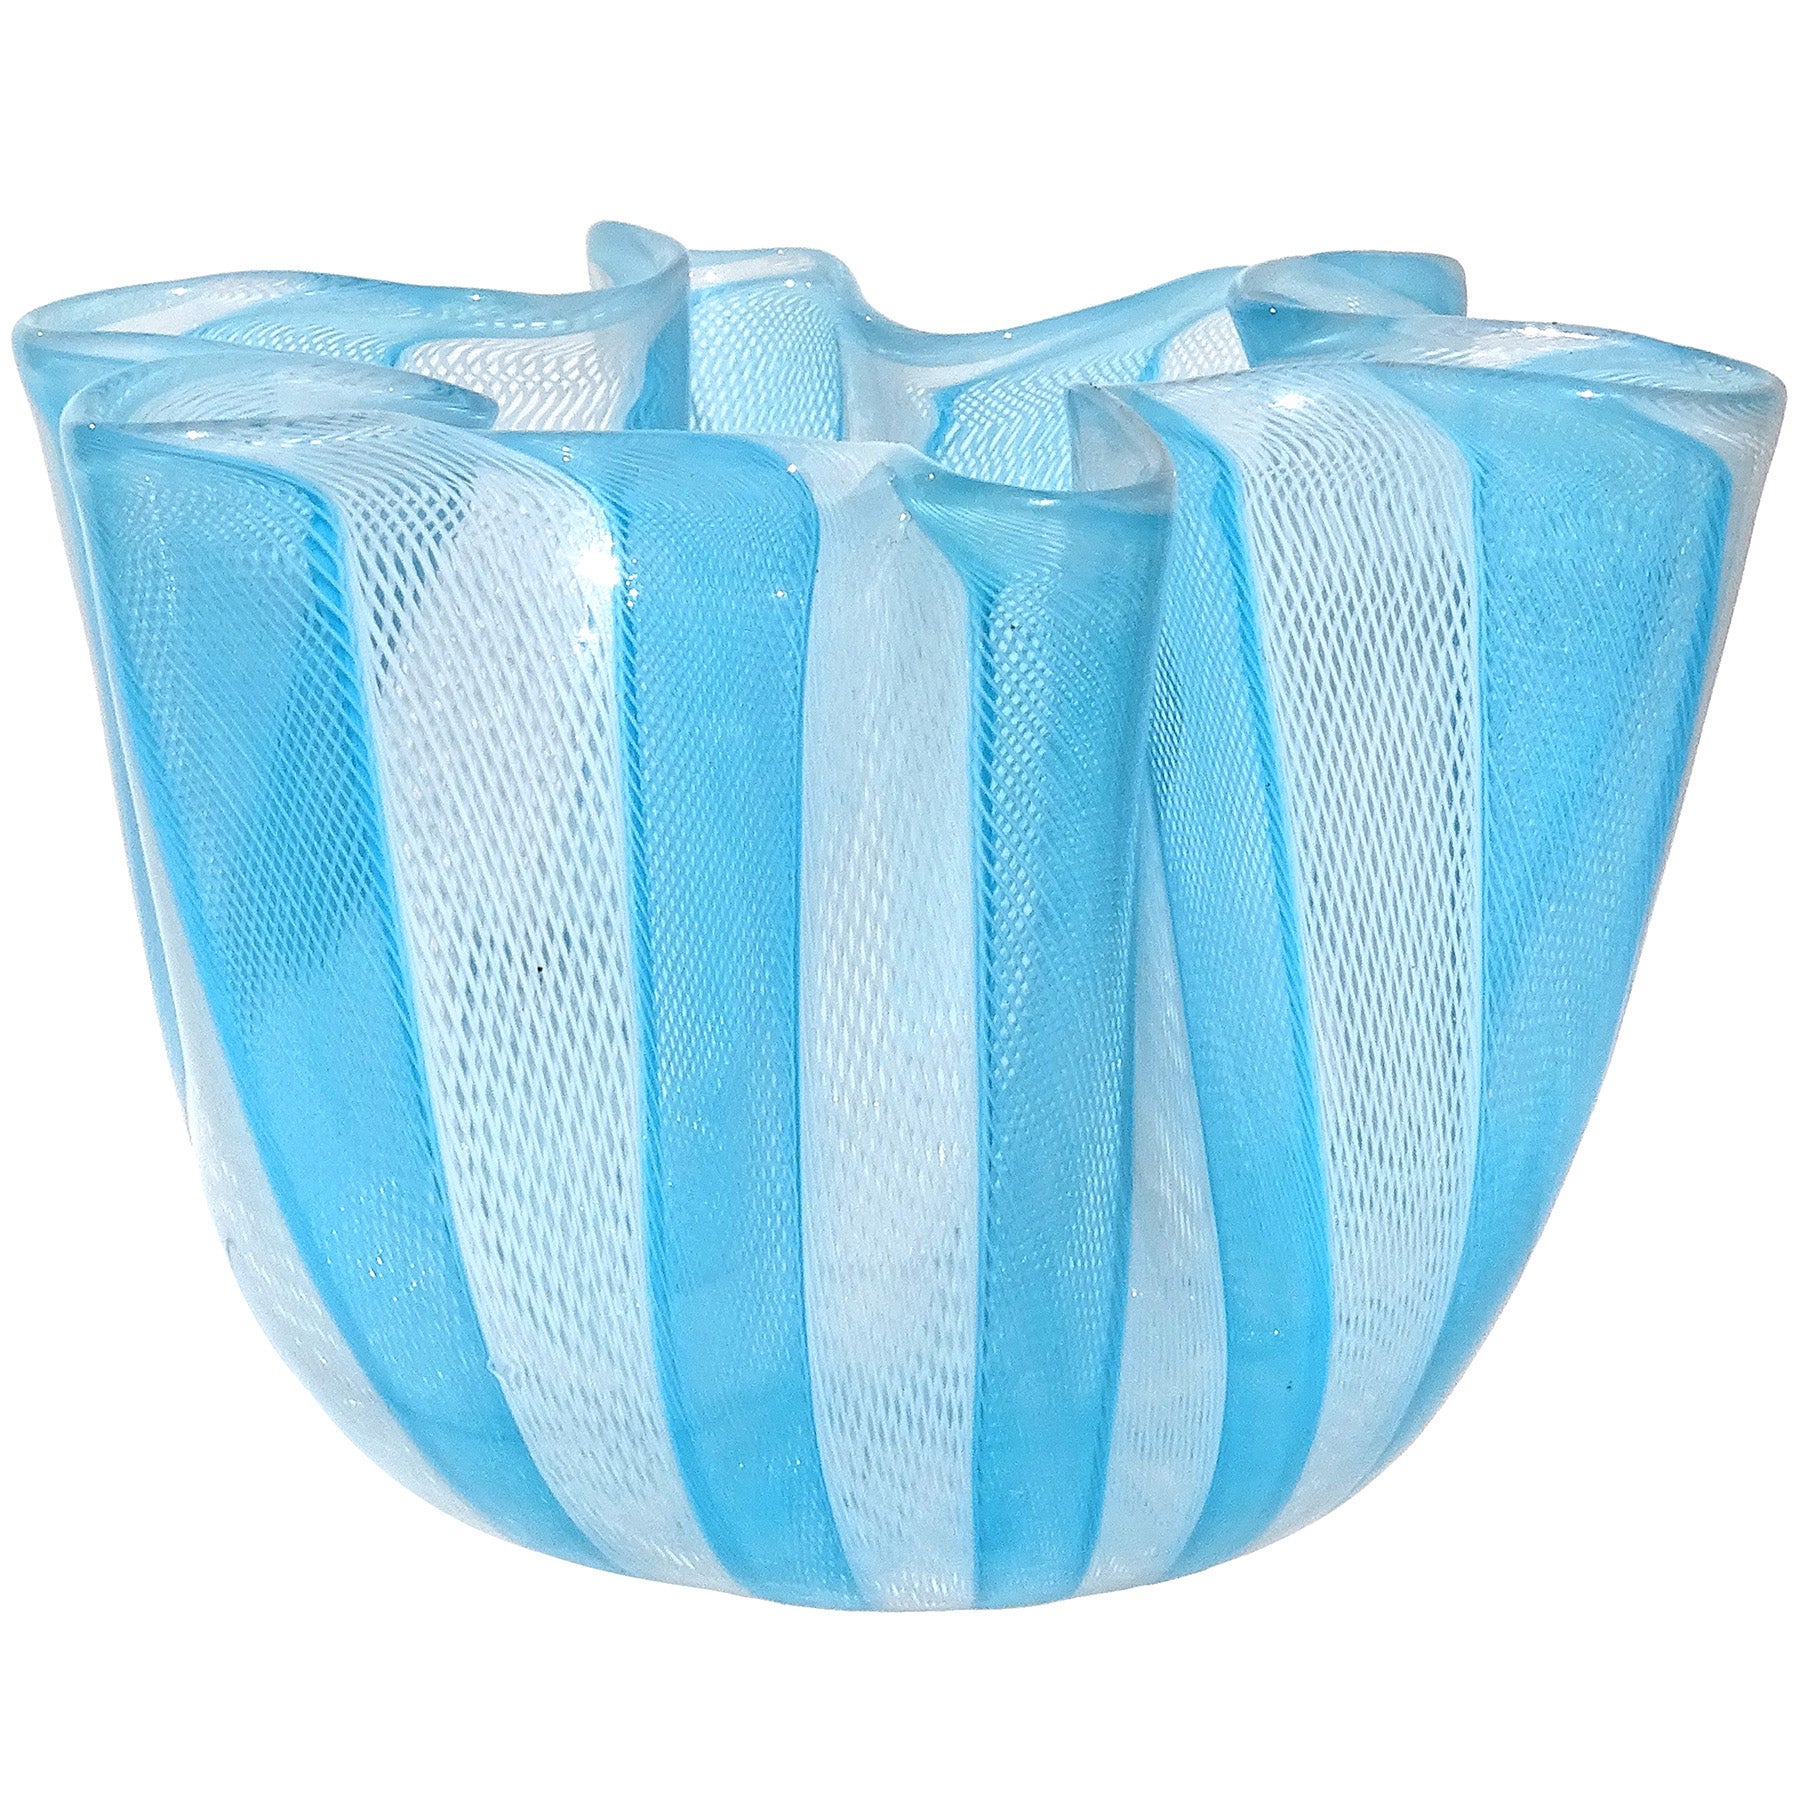 Venini Bianconi, Fazzoletto-Vase aus italienischem Murano-Kunstglas in Blau und Weiß, Zanfirico